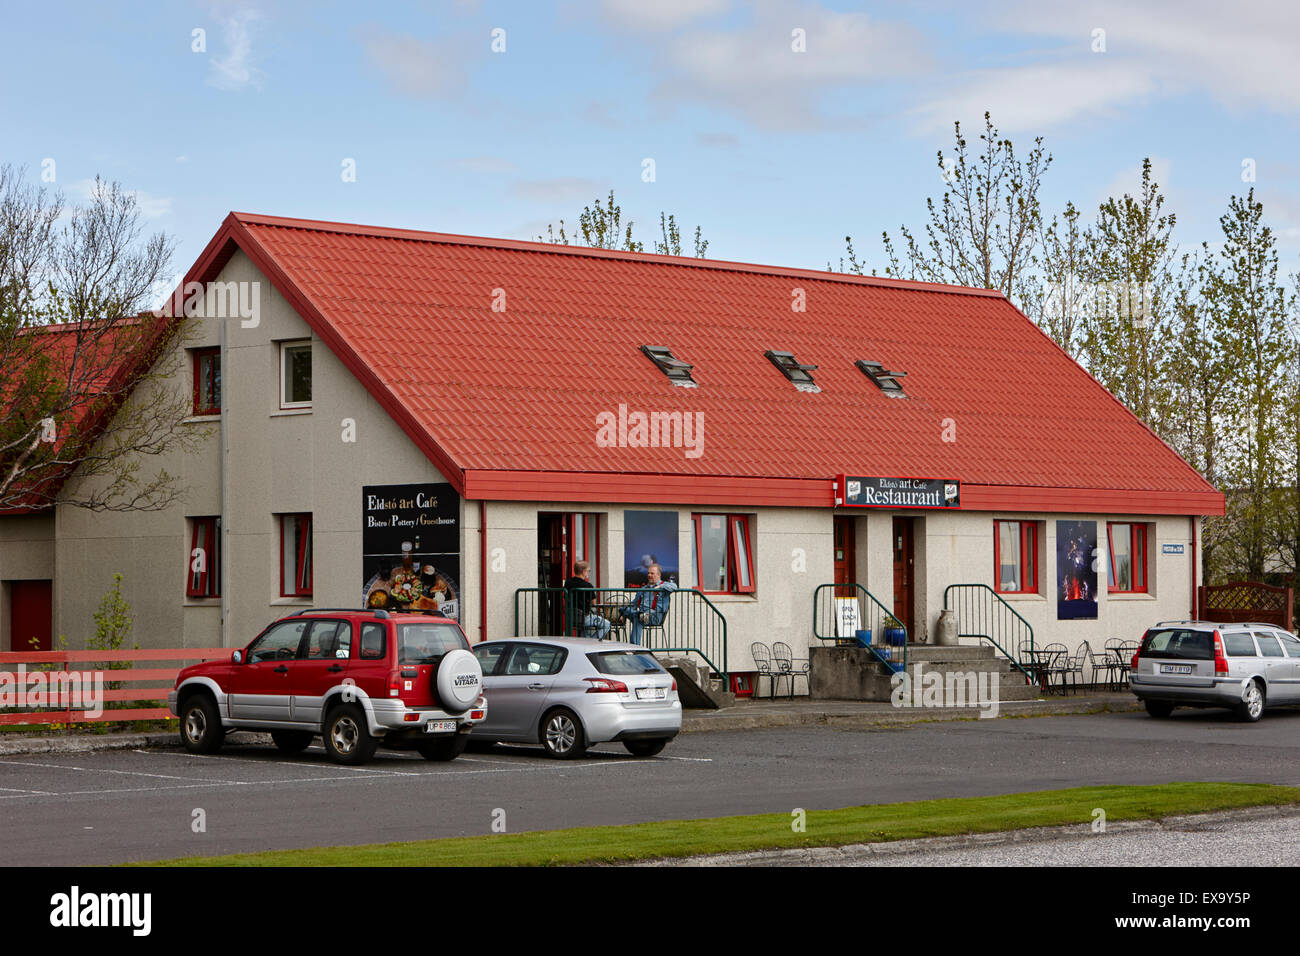 Eldsto art Café et bistro restaurant routier sur la route 1 dans la région de hvolsvollur Islande Banque D'Images